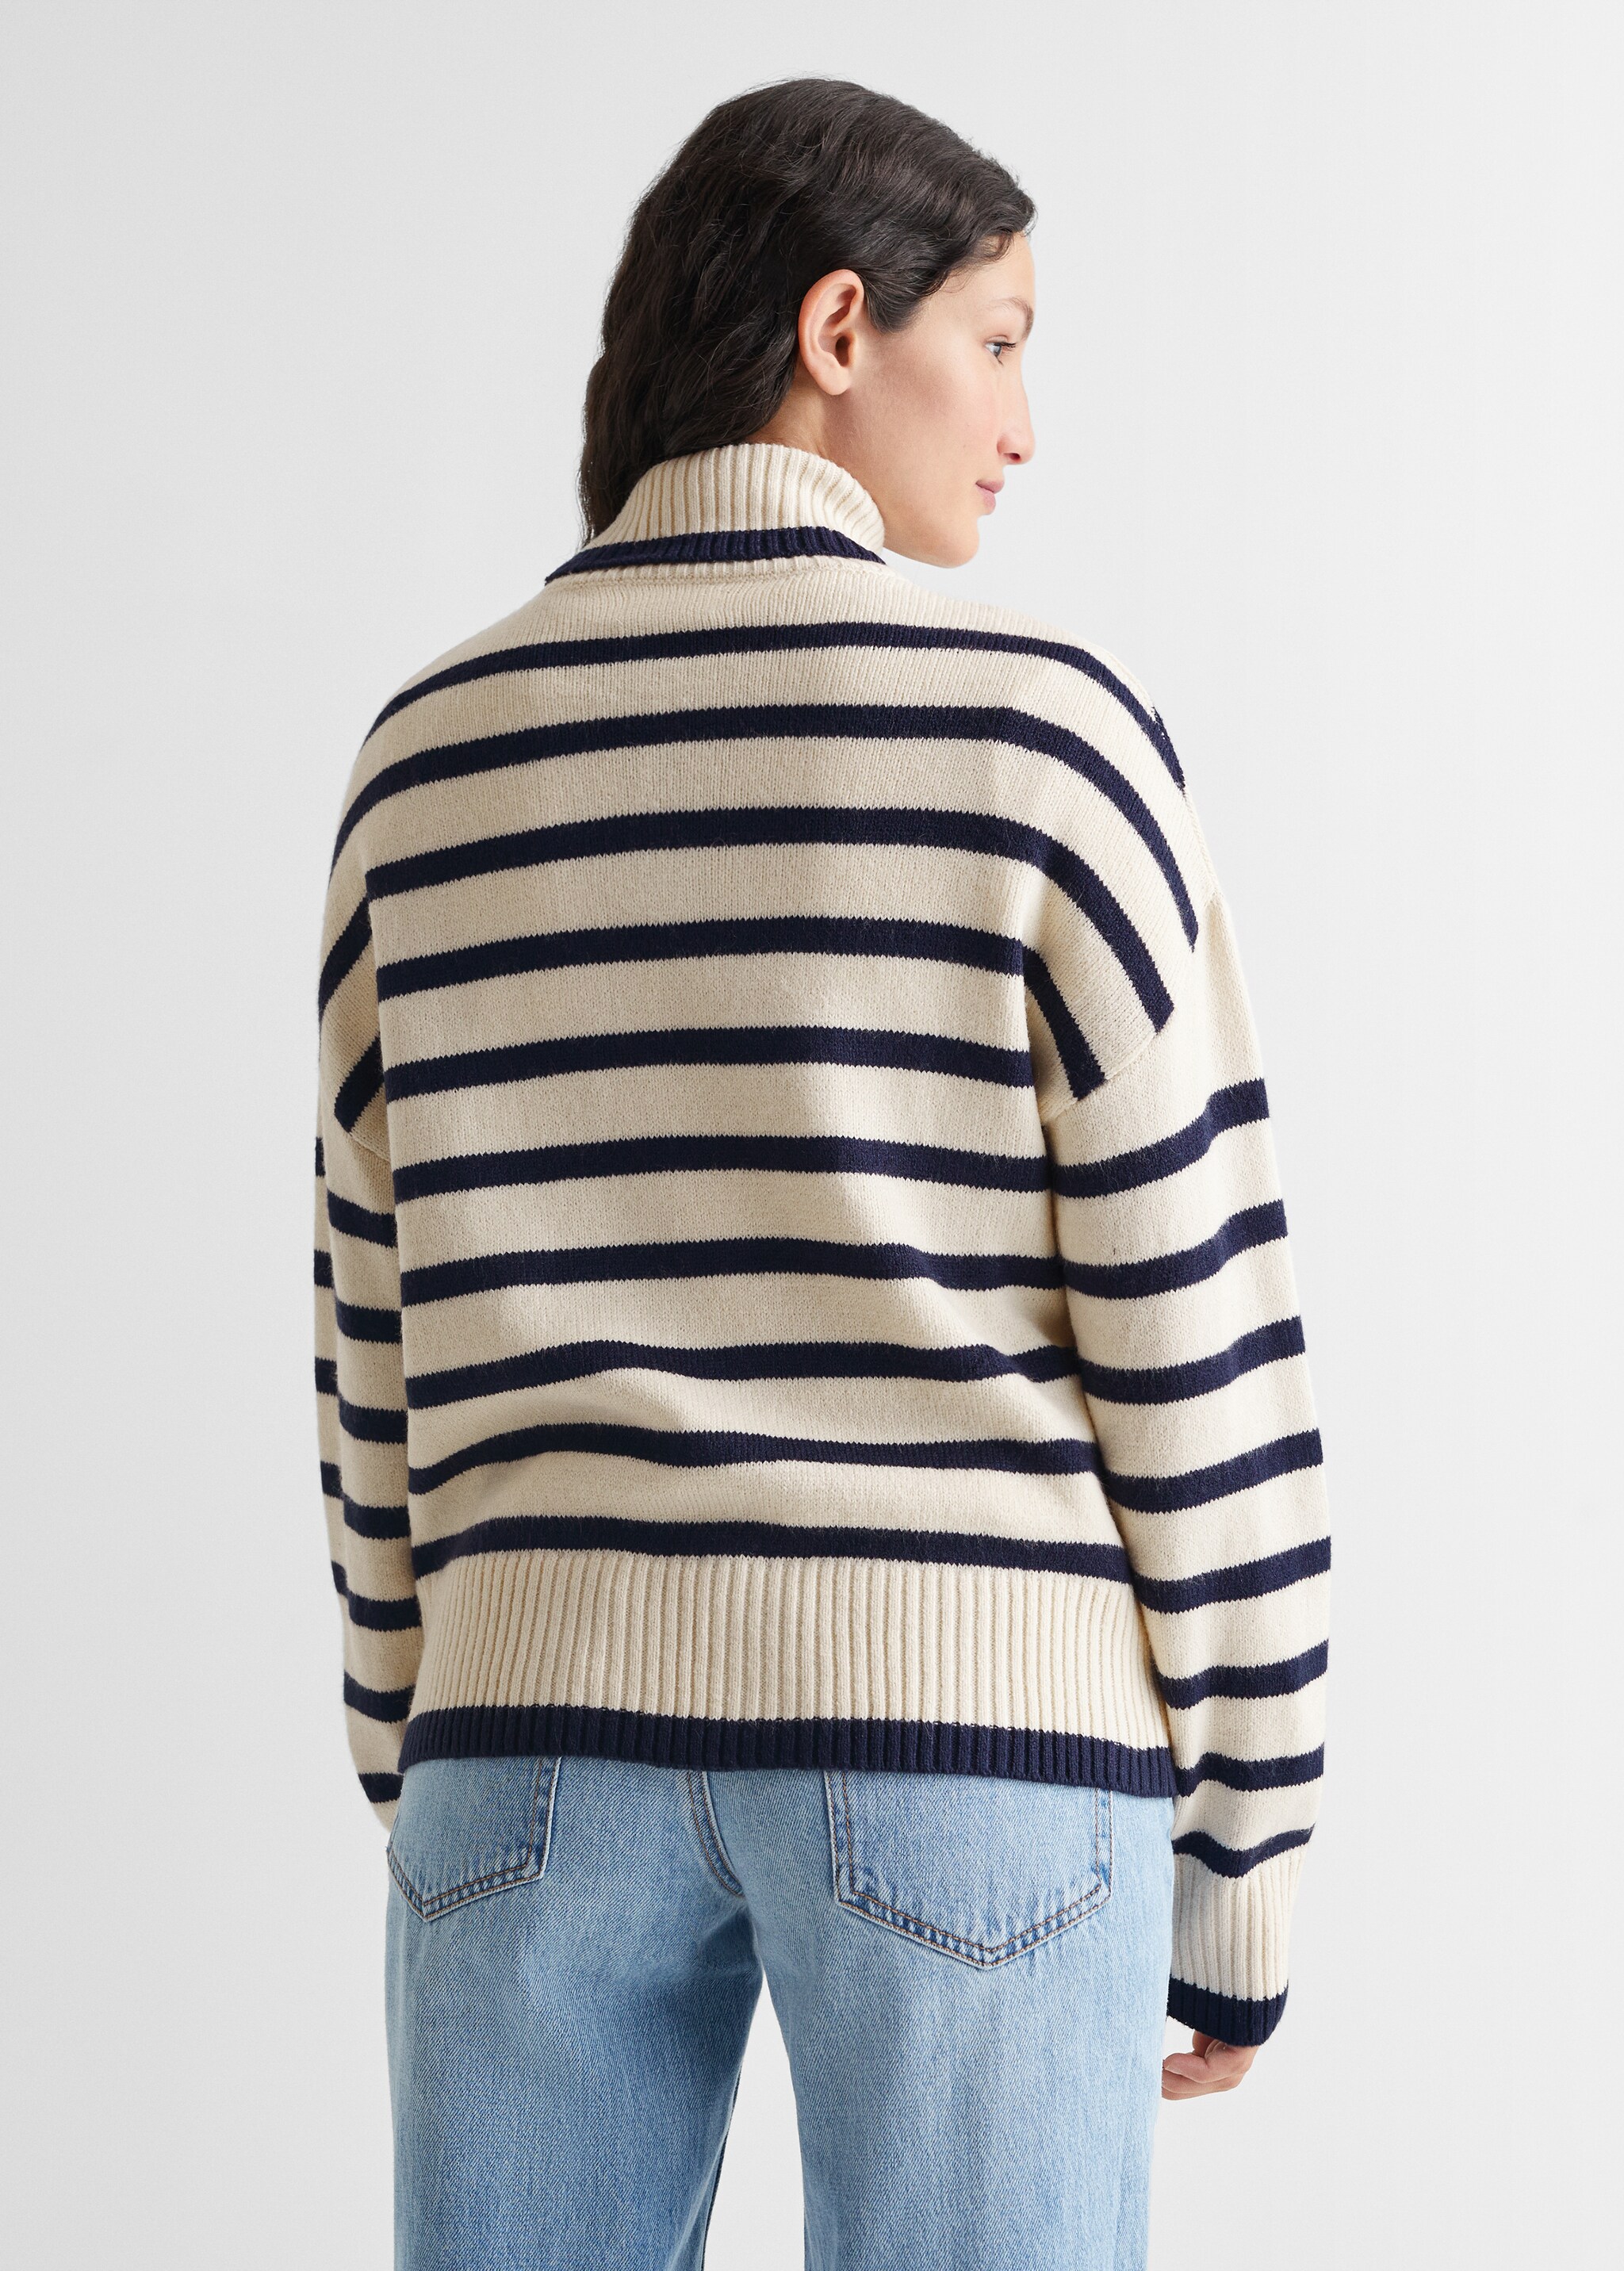 Stand-collar striped sweater - Achterkant van het artikel